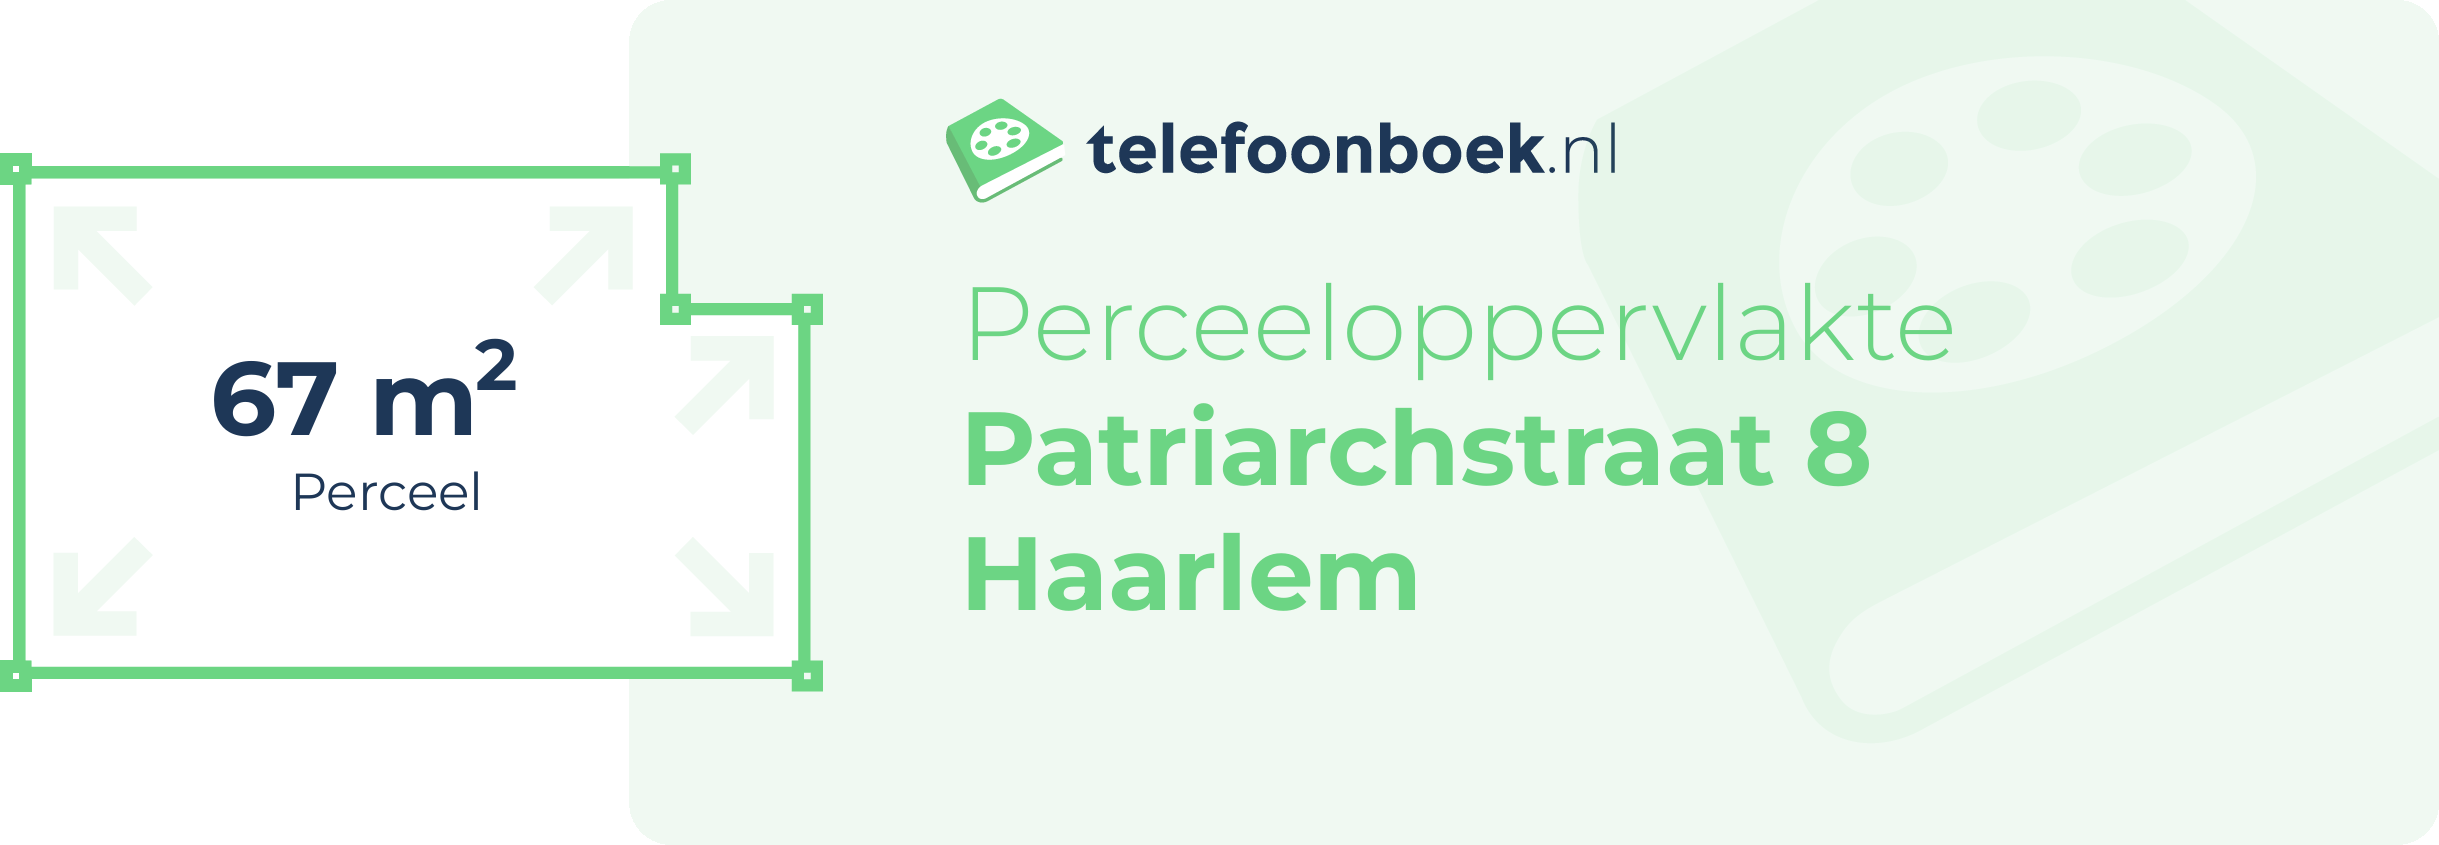 Perceeloppervlakte Patriarchstraat 8 Haarlem